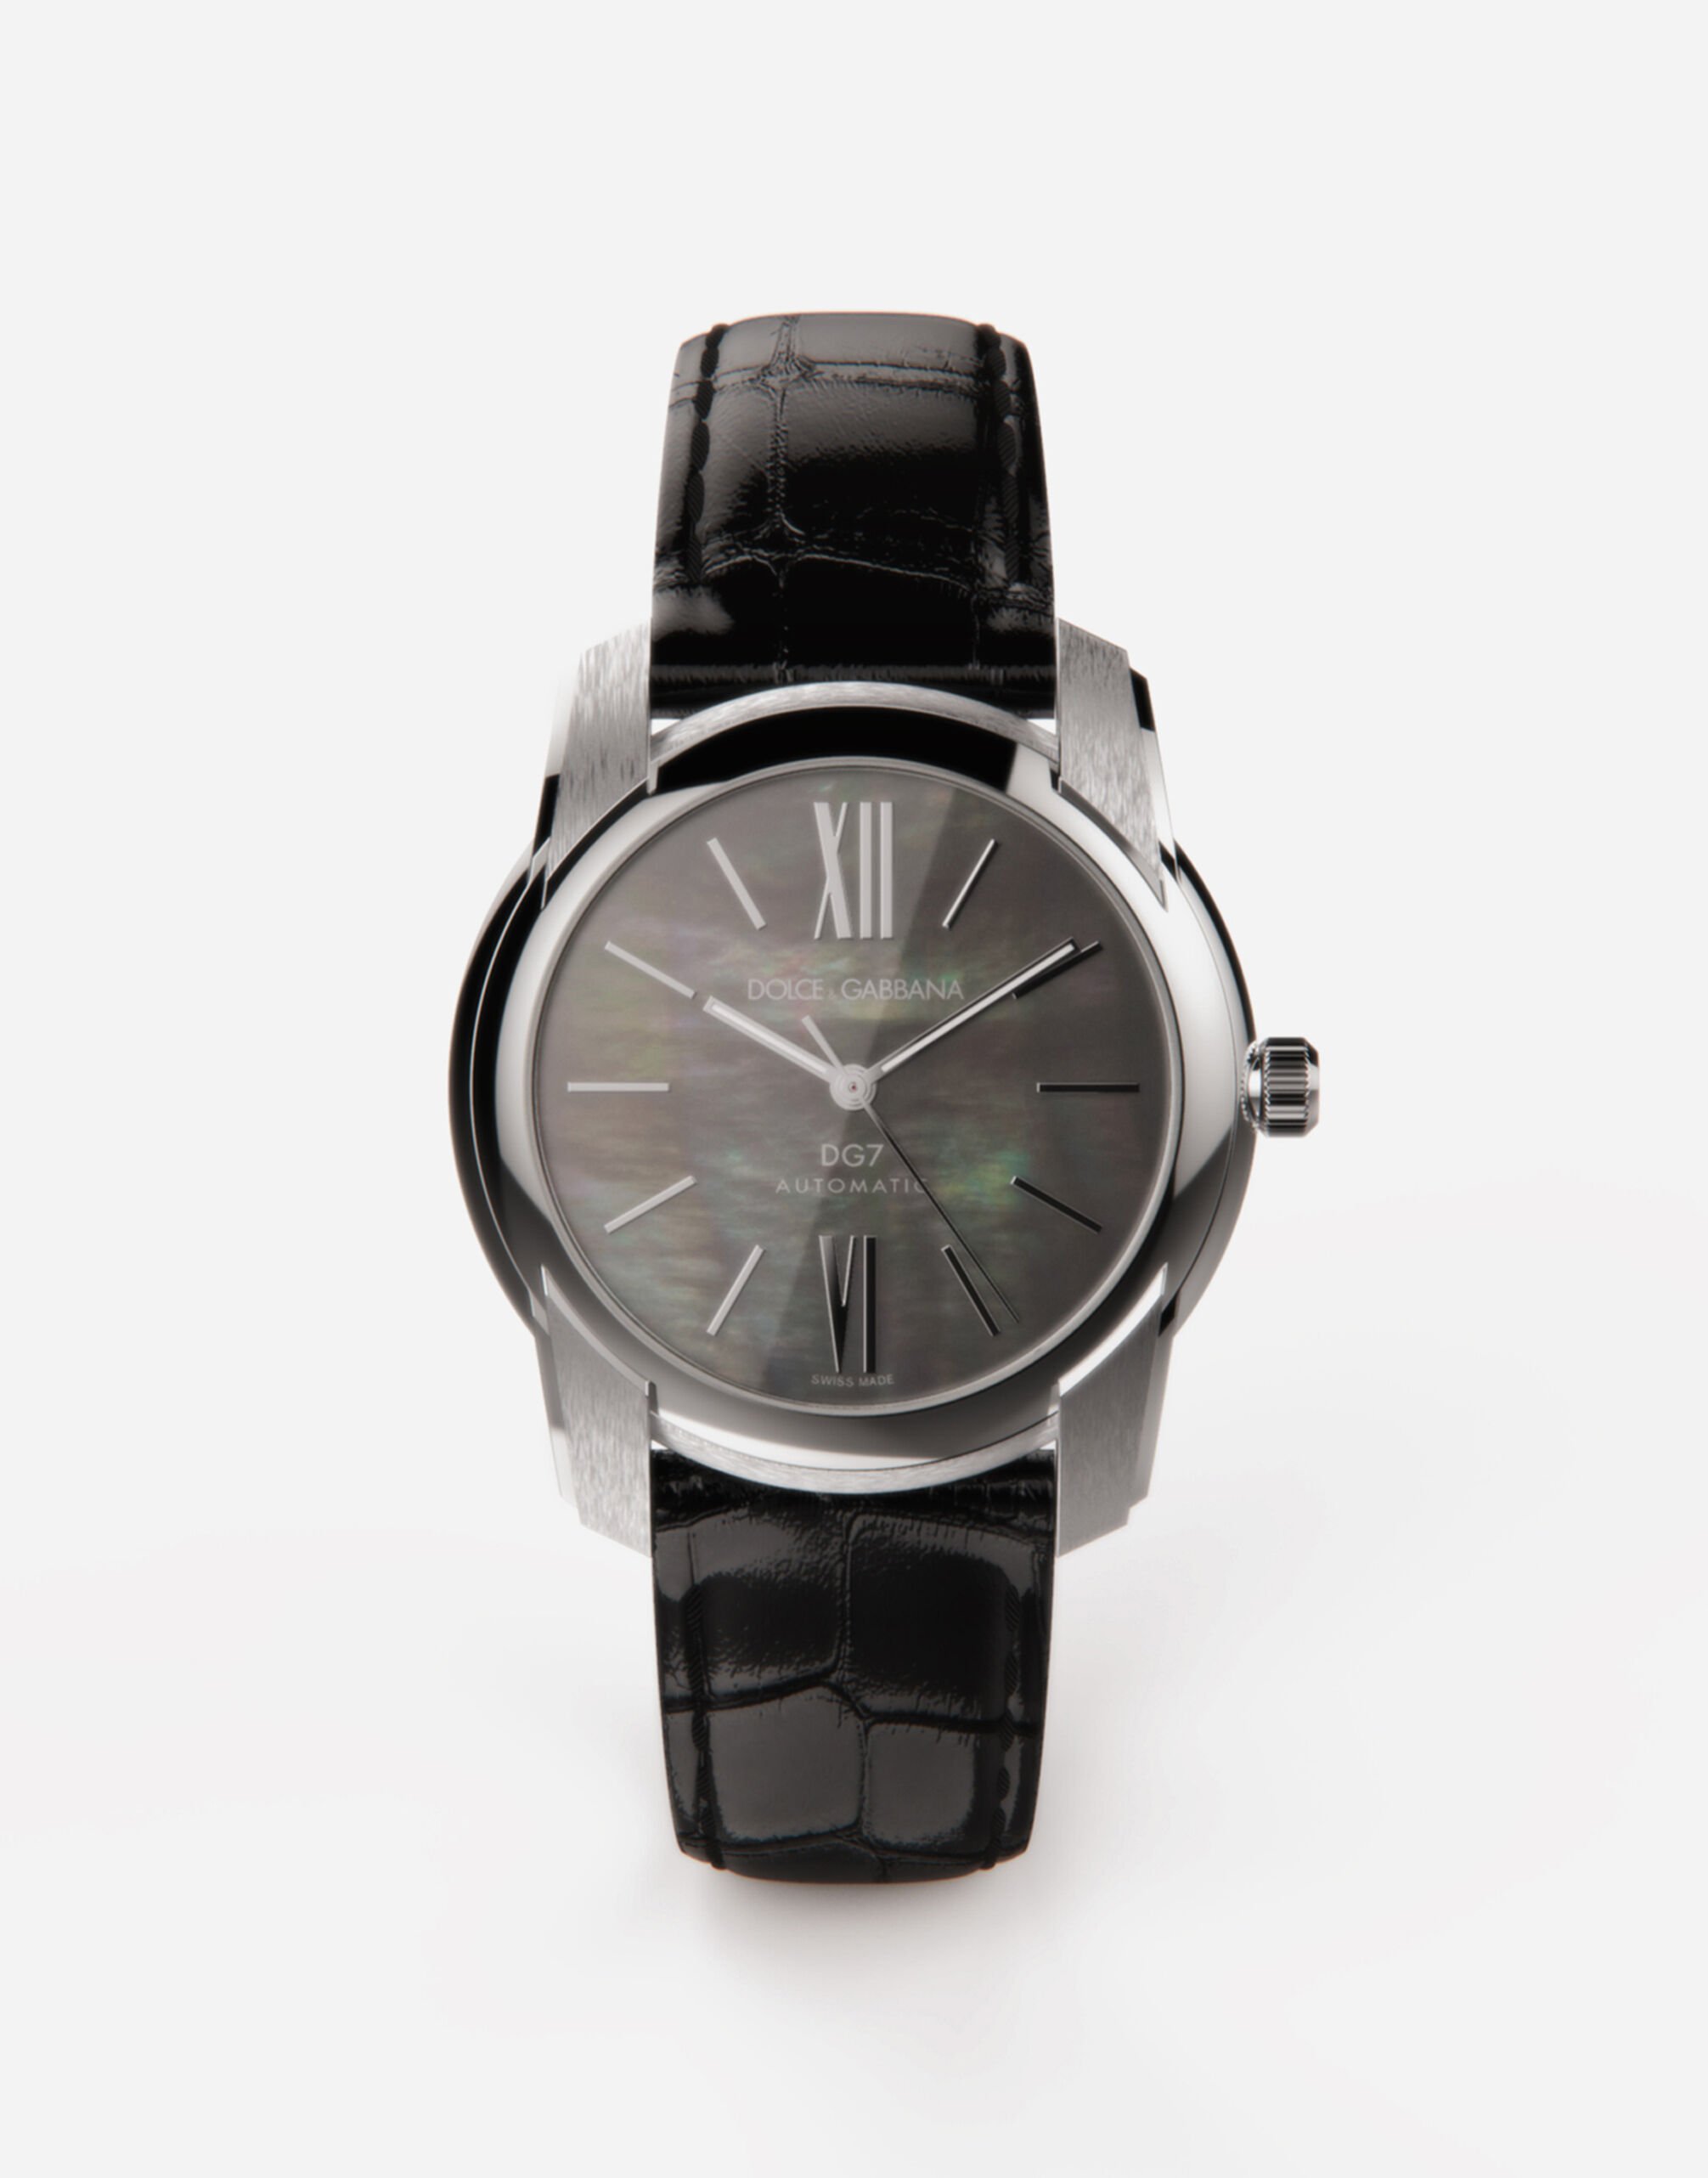 Dolce&Gabbana Uhr DG7 aus stahl mit schwarzem perlmutt Mehrfarbig BM2281AJ705